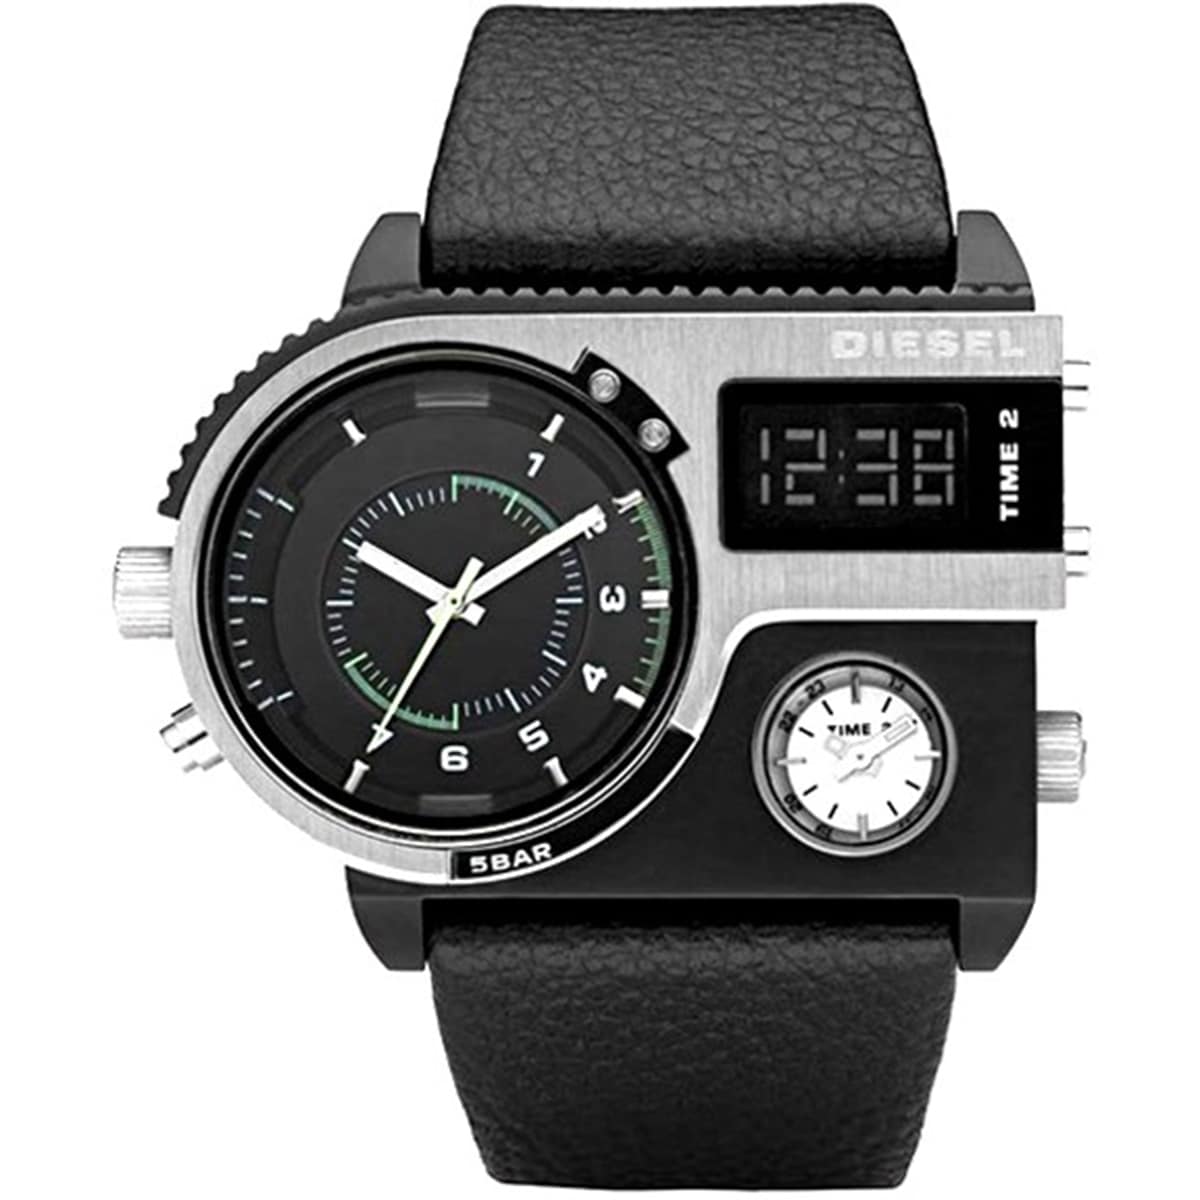 diesel digital watch